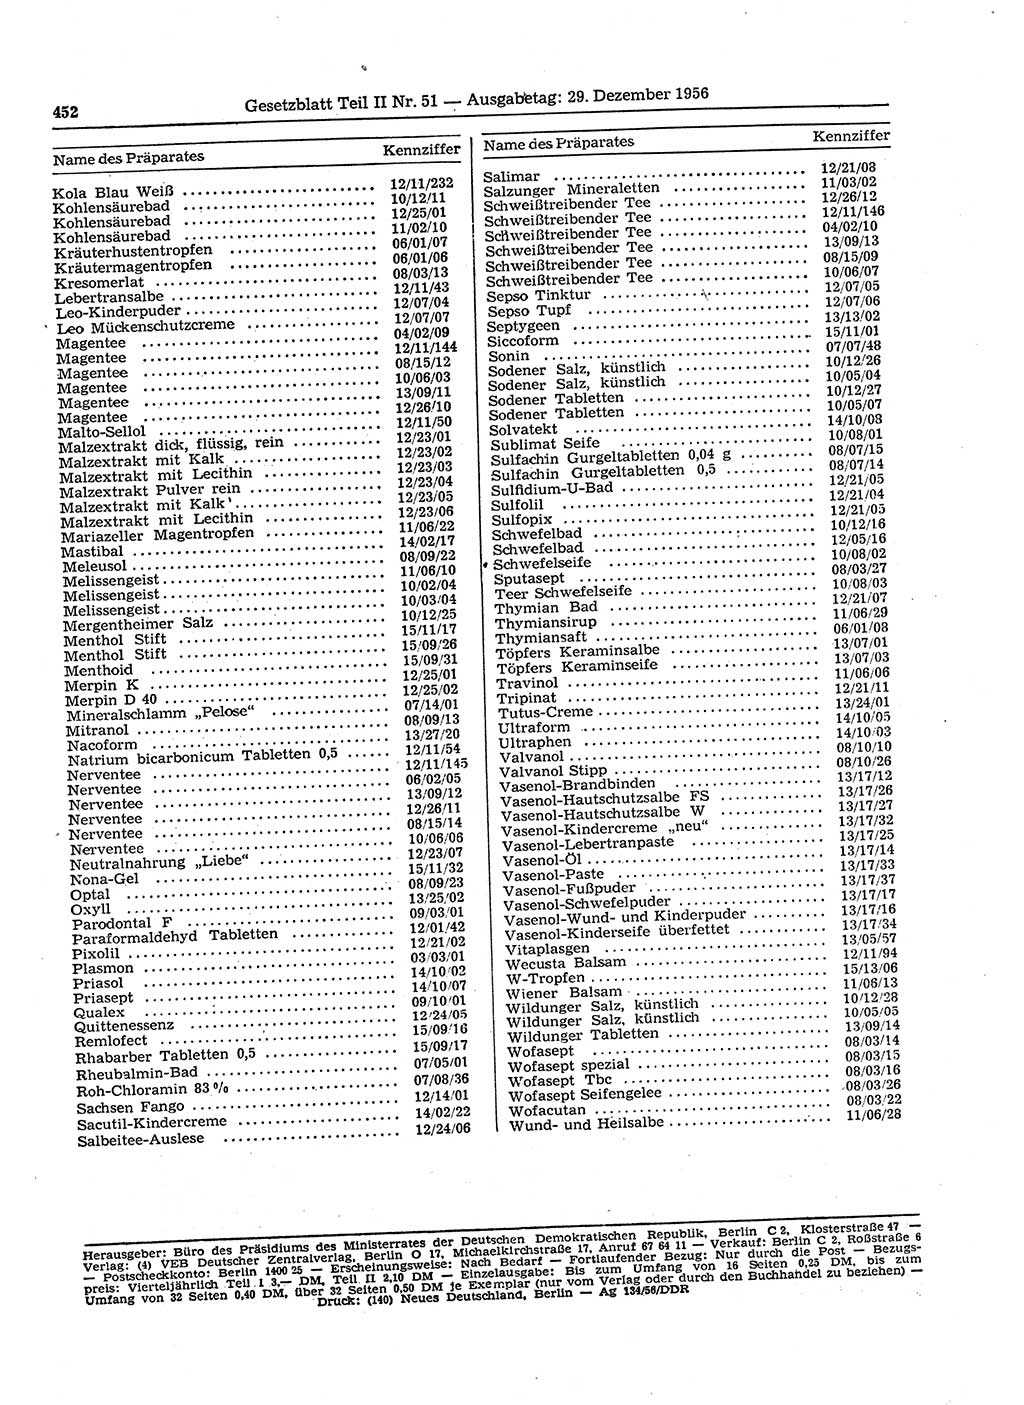 Gesetzblatt (GBl.) der Deutschen Demokratischen Republik (DDR) Teil ⅠⅠ 1956, Seite 452 (GBl. DDR ⅠⅠ 1956, S. 452)